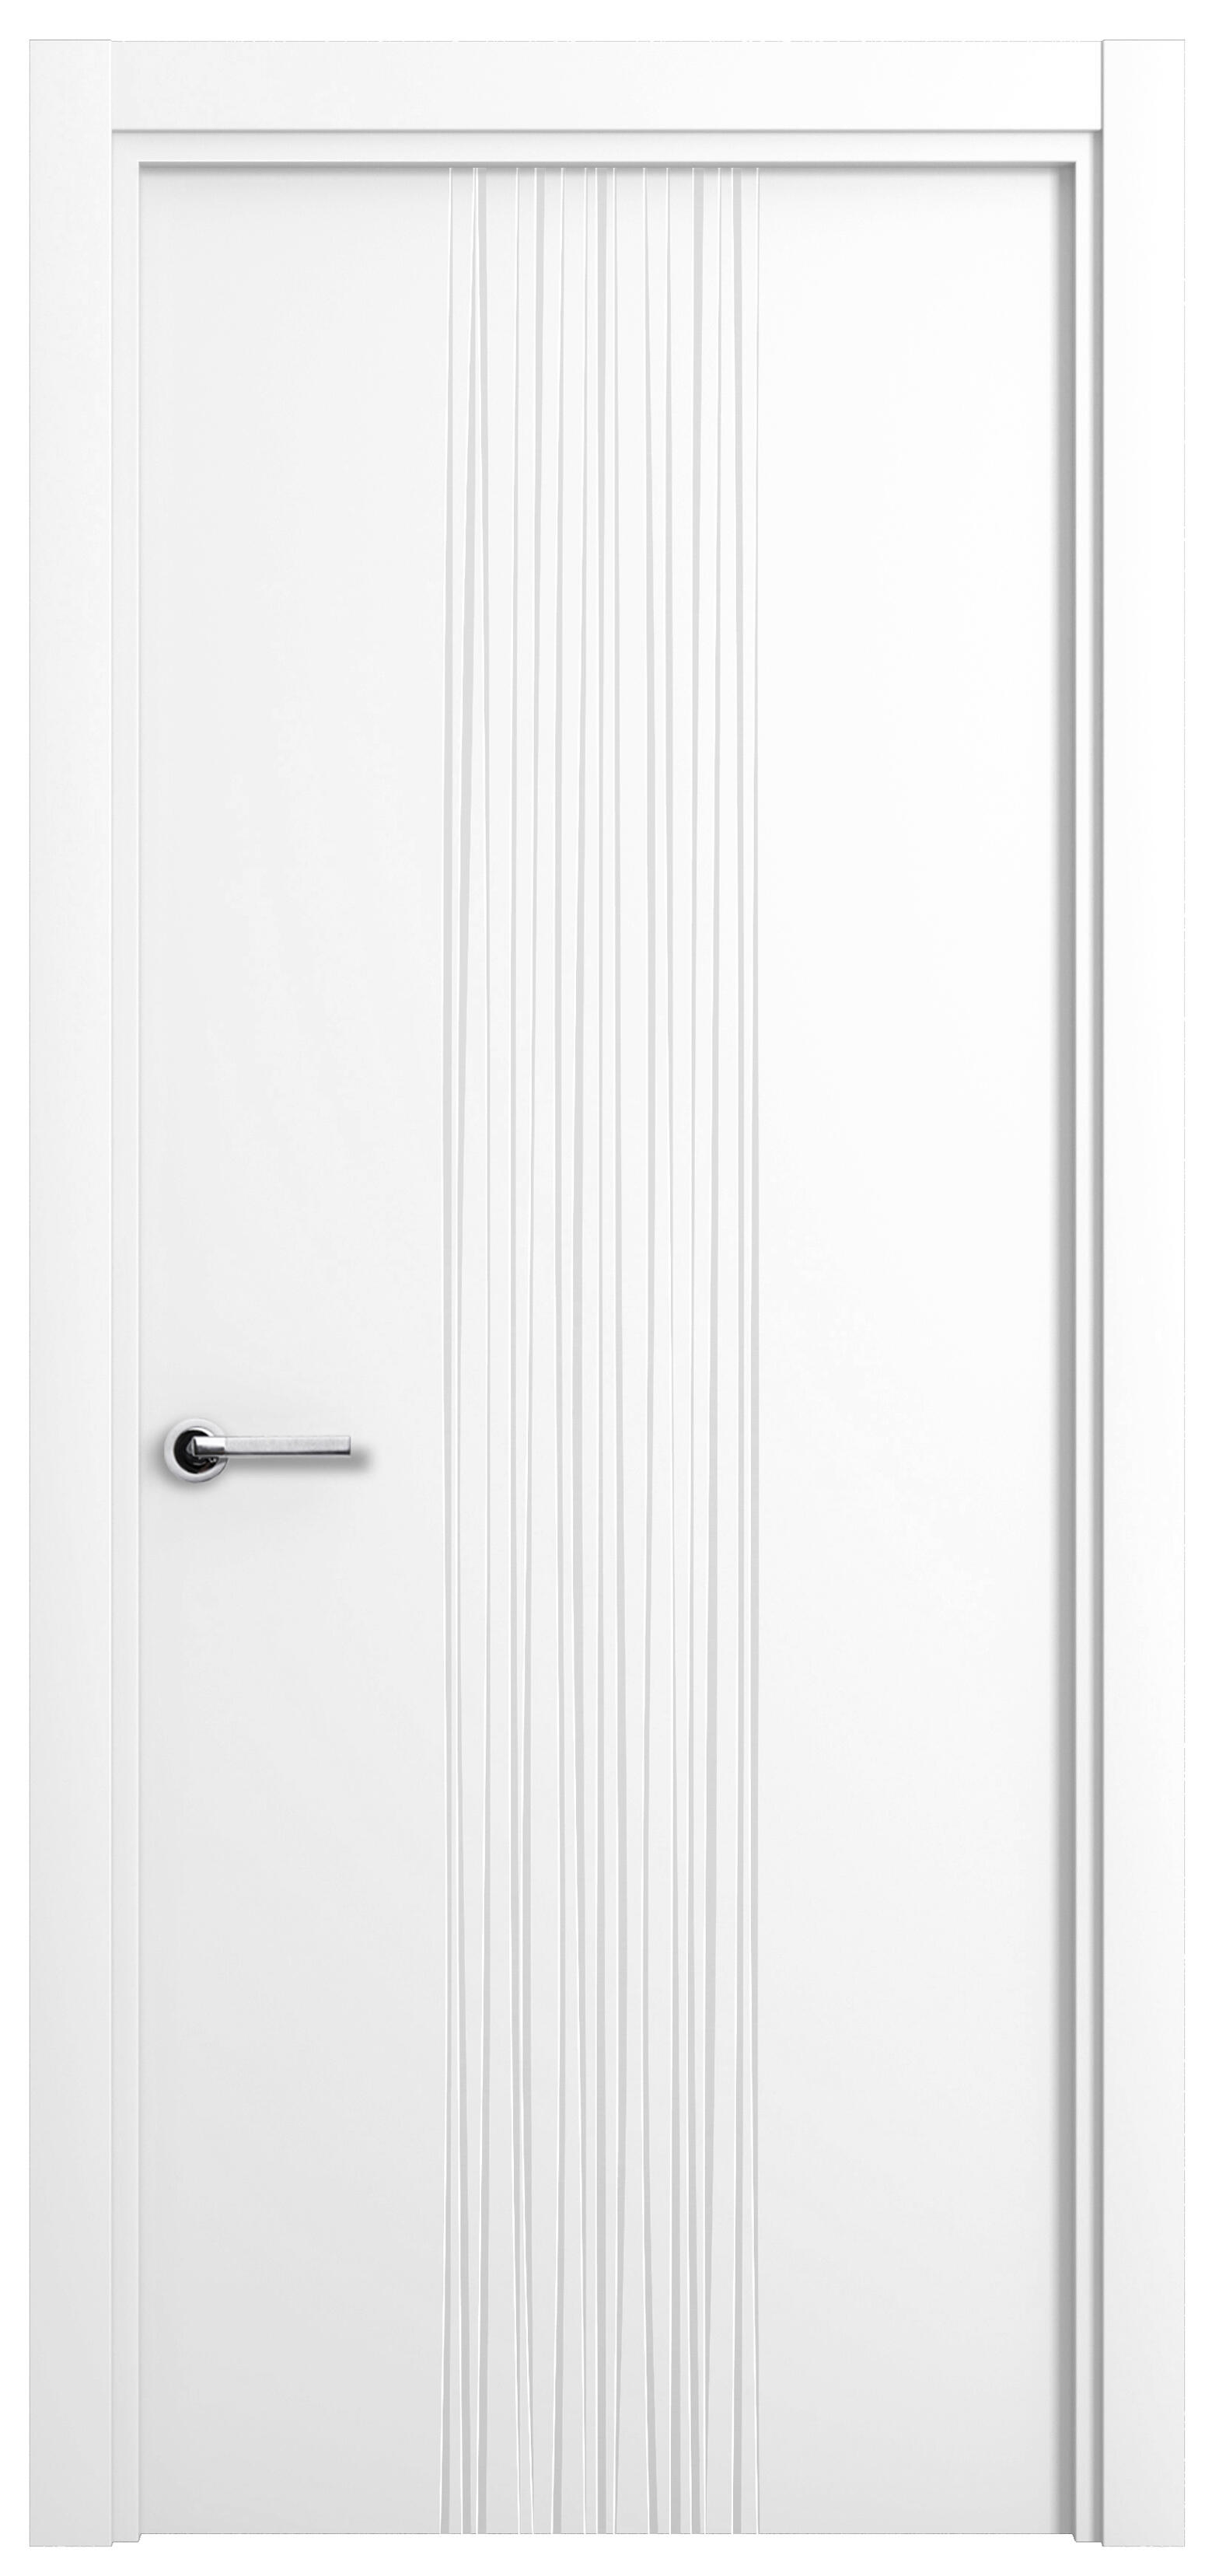 Puerta quevedo premium blanco apertura derecha 9x72.5cm